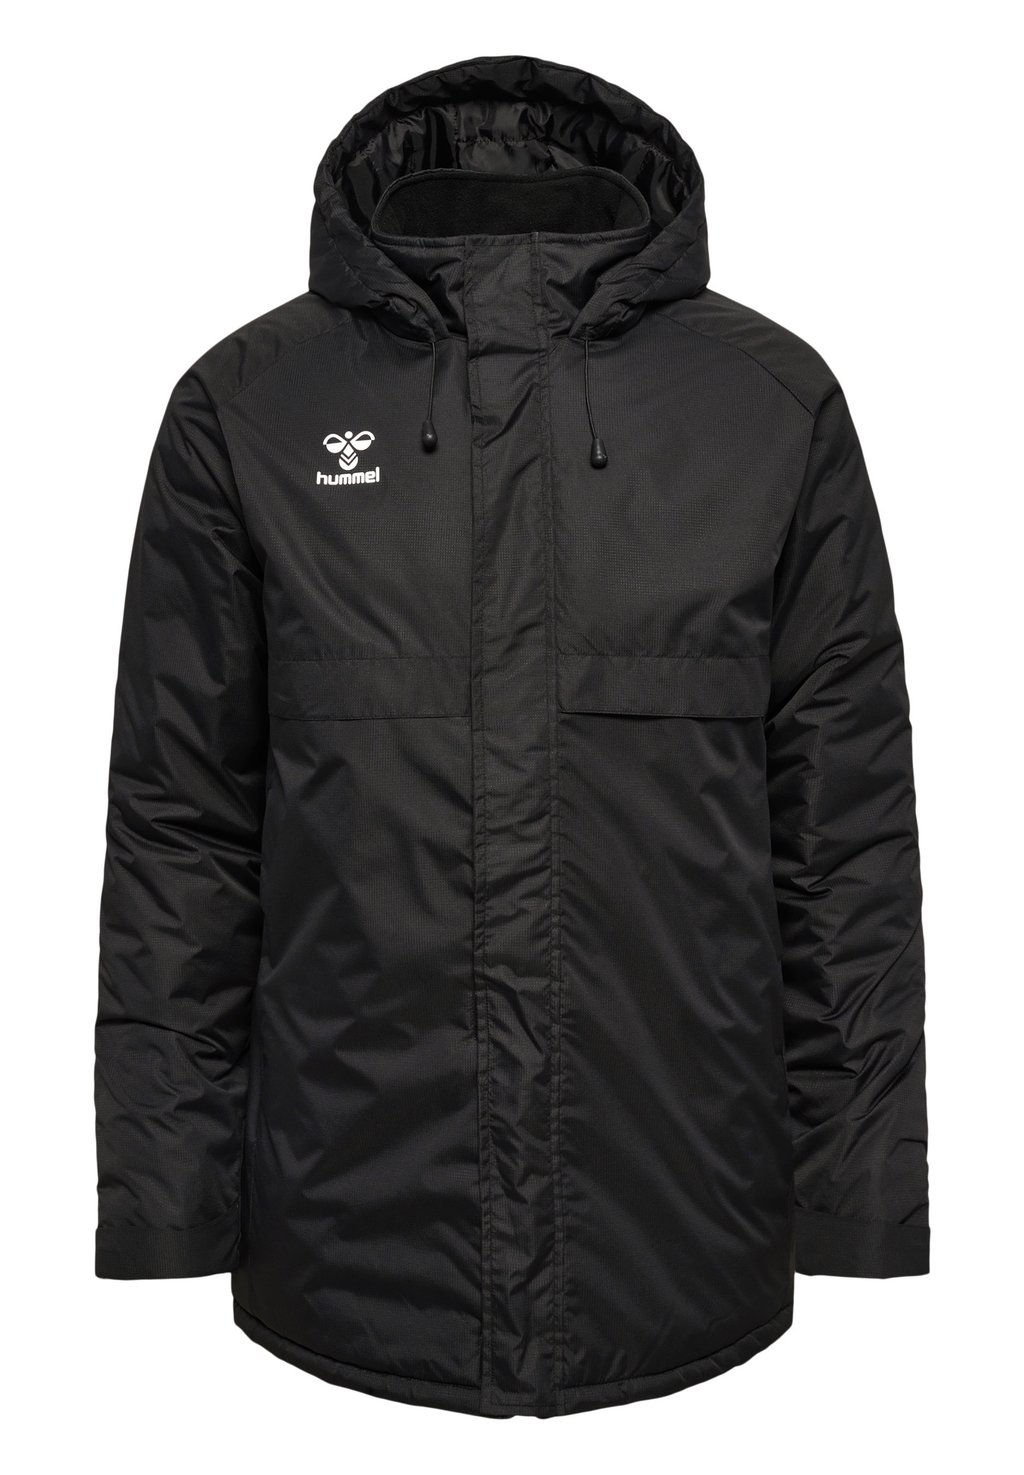 Куртка для активного отдыха Hmlgo Hummel, черный куртка для активного отдыха odlo черный